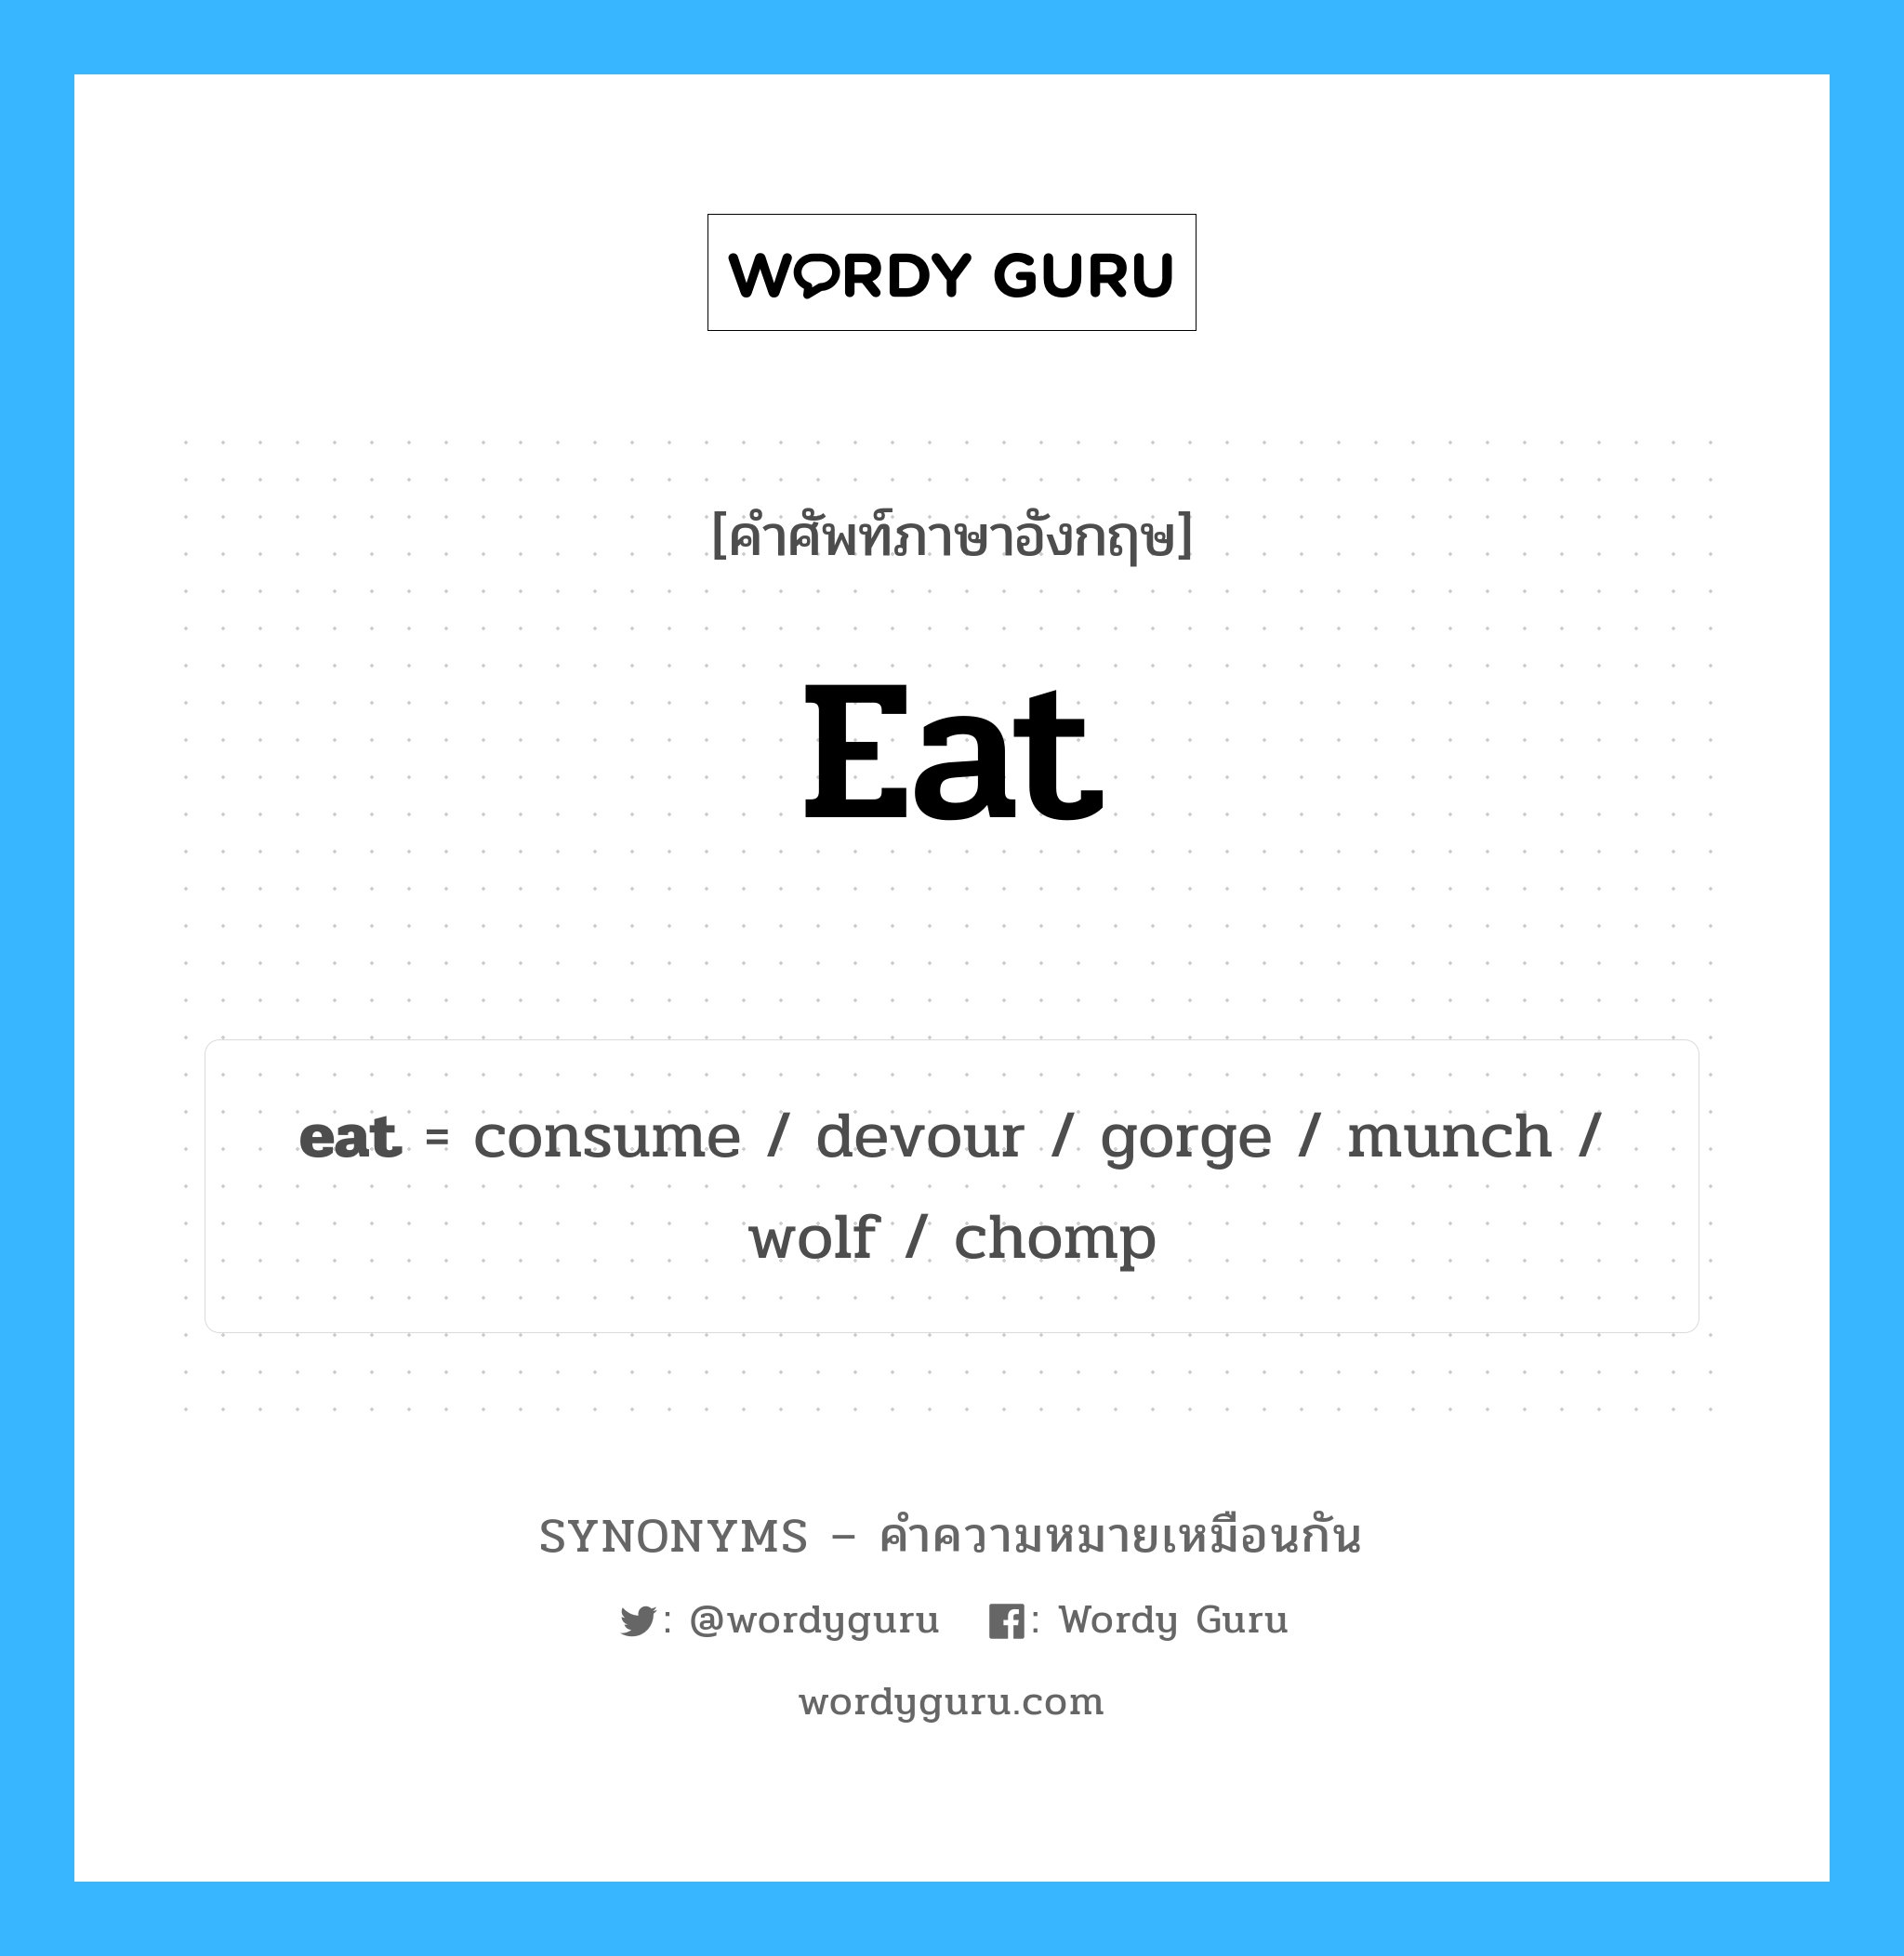 munch เป็นหนึ่งใน eat และมีคำอื่น ๆ อีกดังนี้, คำศัพท์ภาษาอังกฤษ munch ความหมายคล้ายกันกับ eat แปลว่า แทะเล็ม หมวด eat